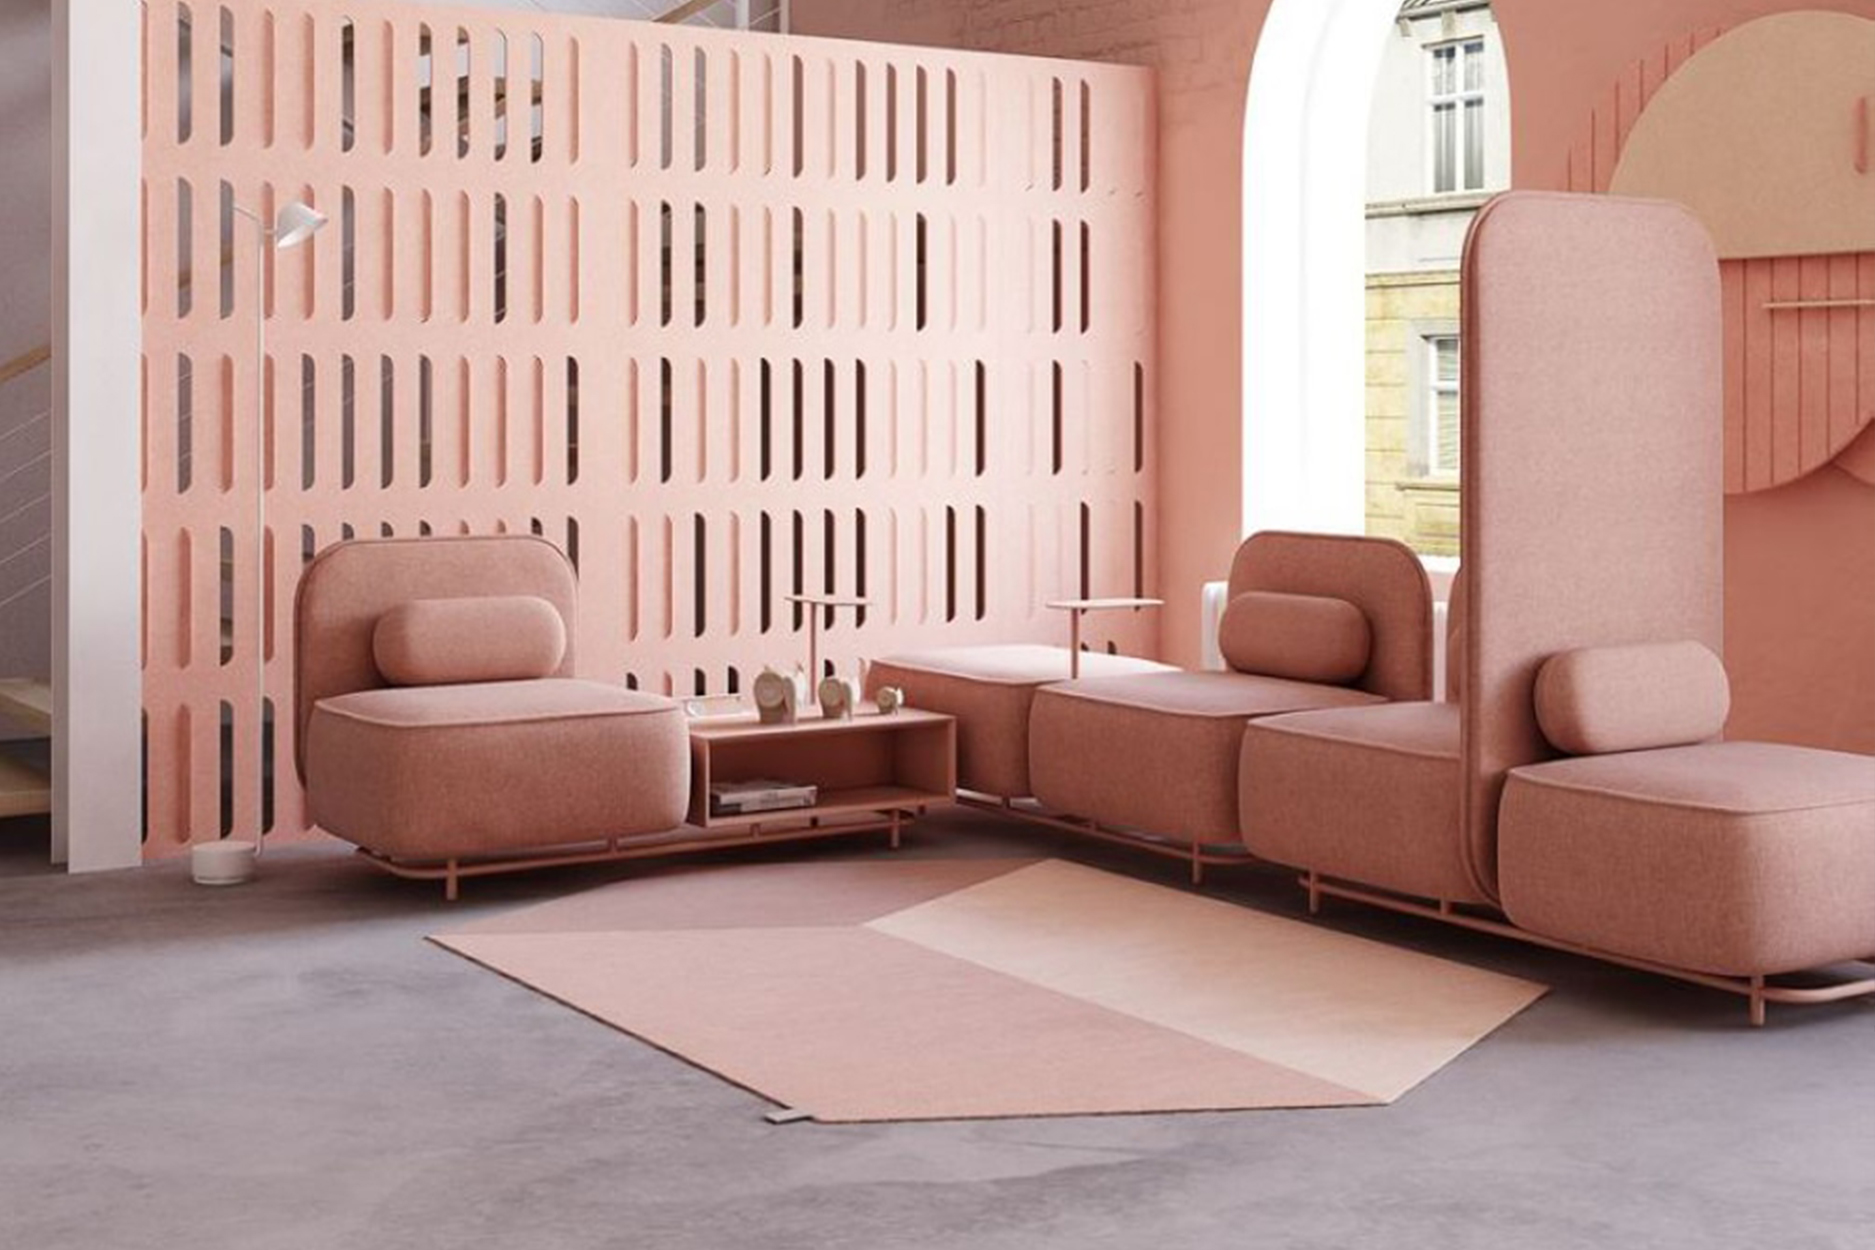 Стань дизайнером, собери свой идеальный диван из модулей